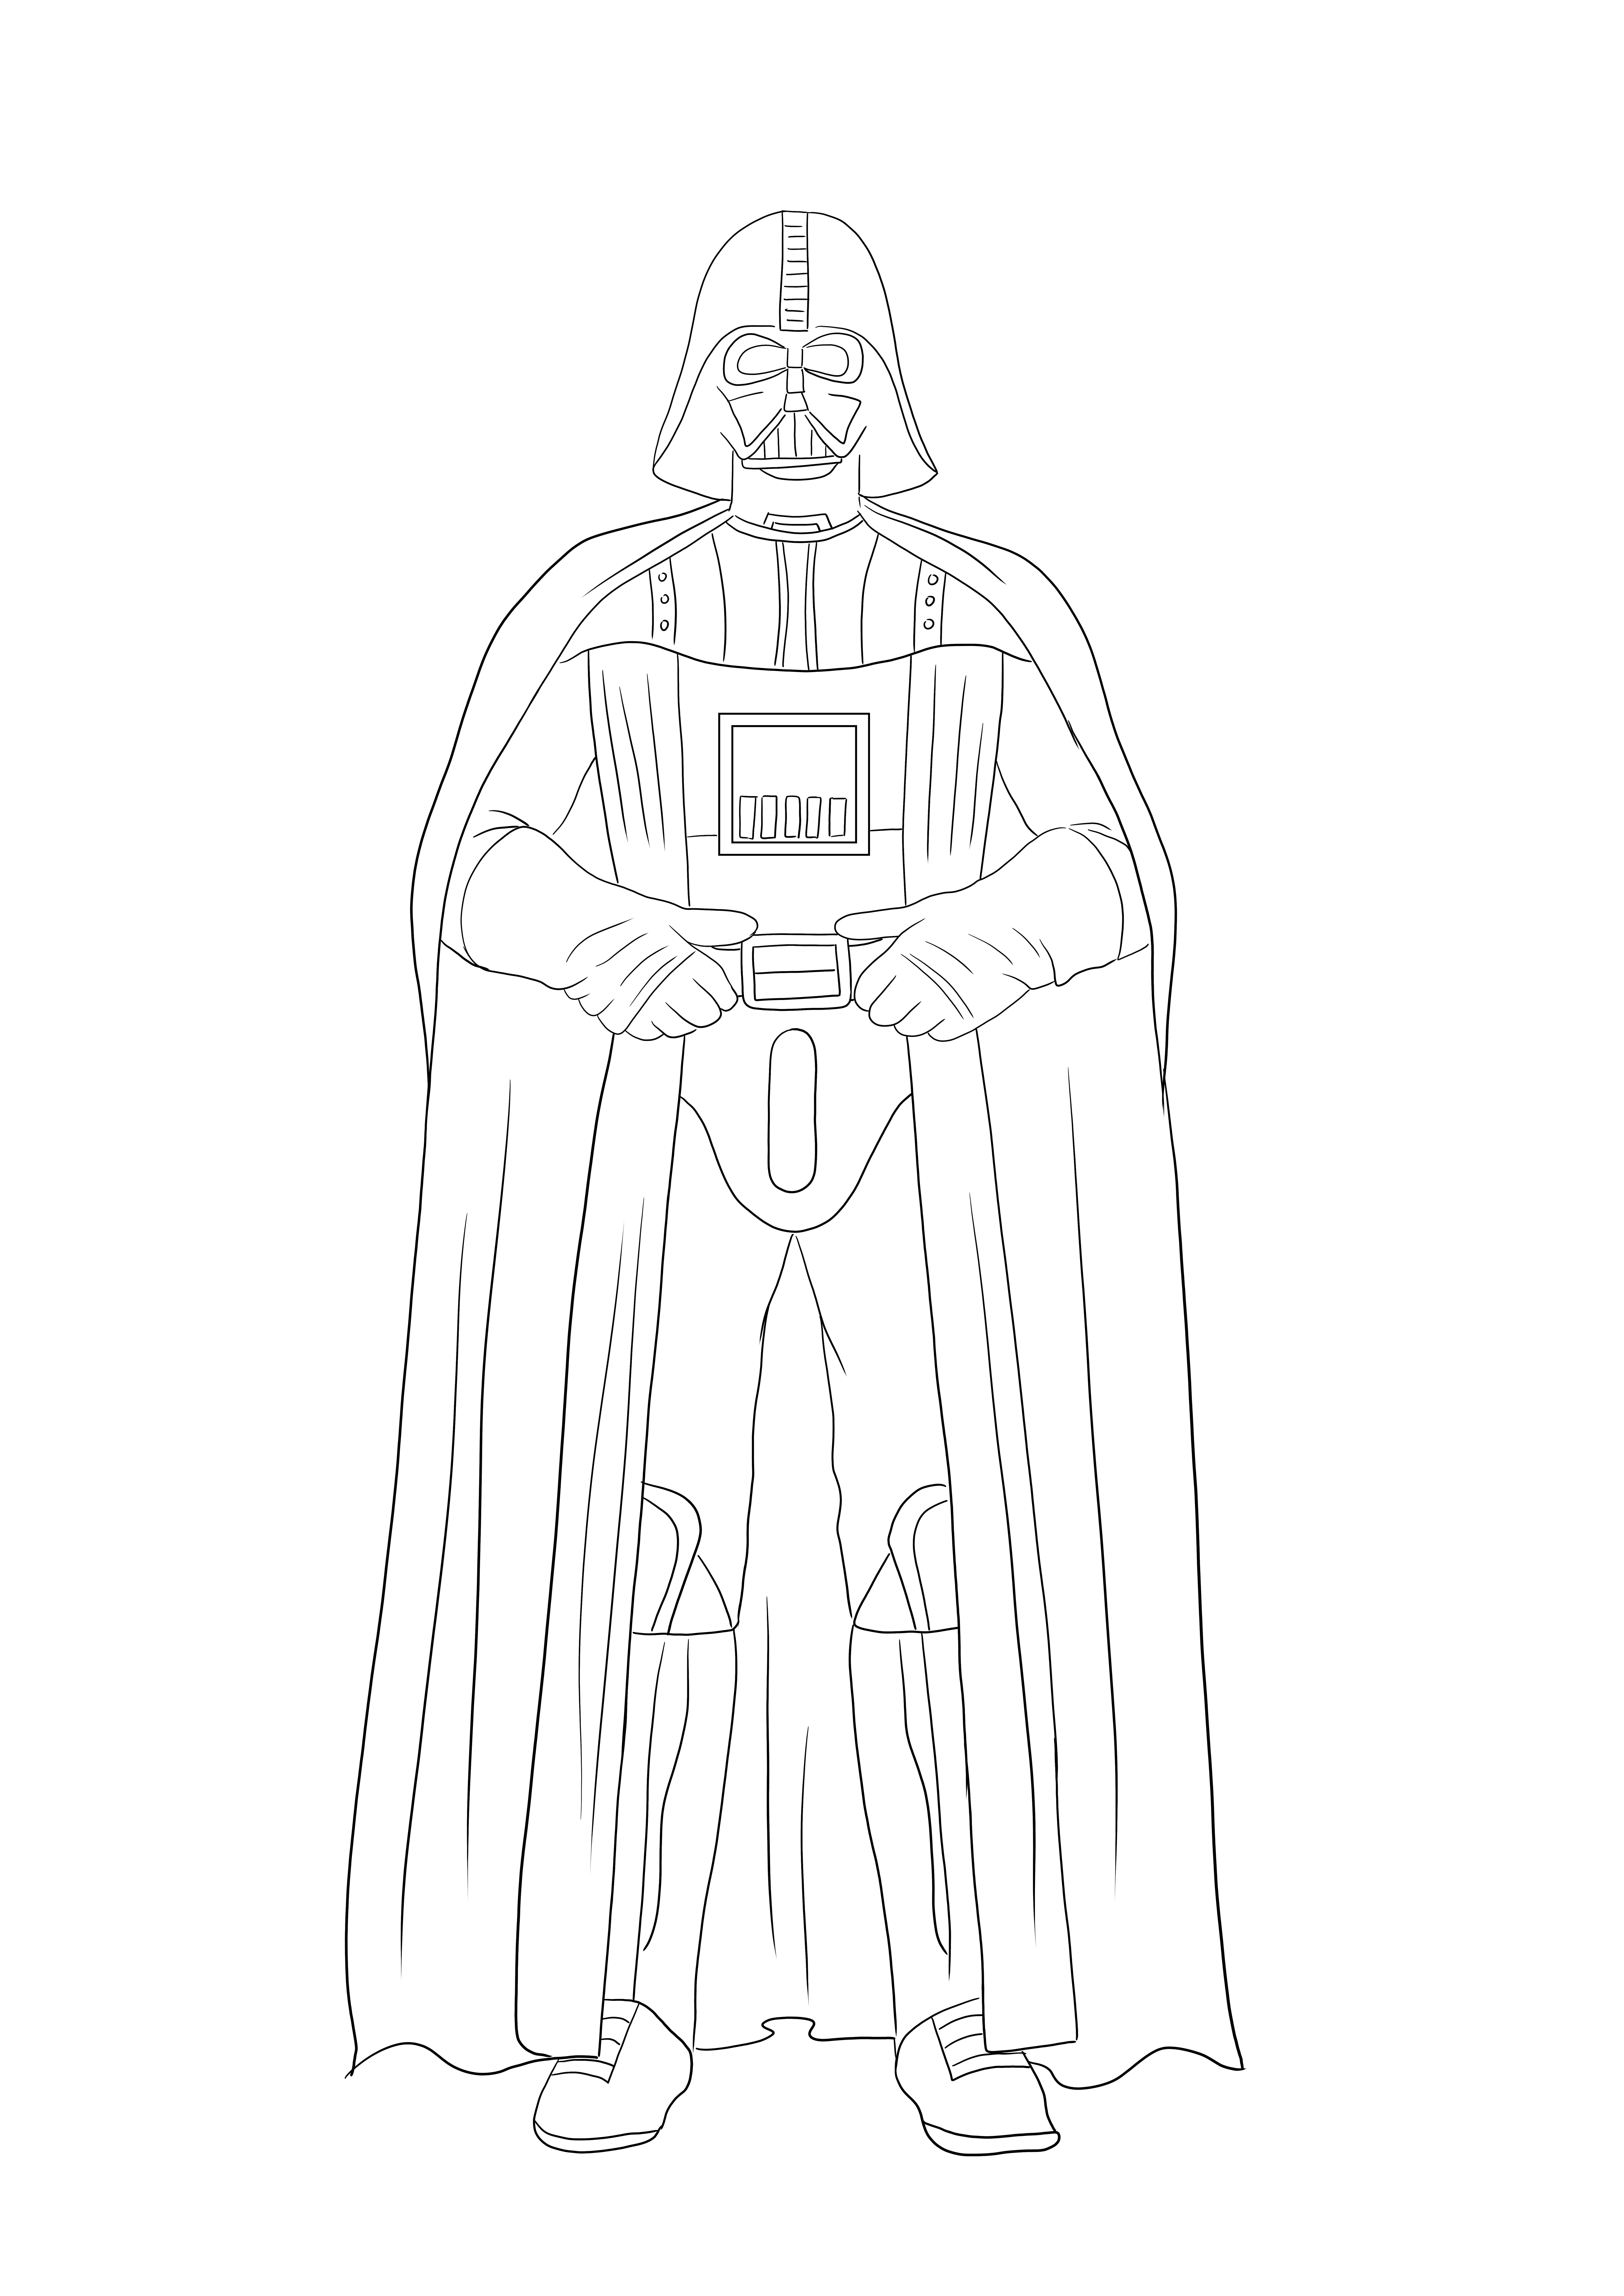 La imagen para colorear de Darth Vader está lista para ser impresa y coloreada por todos sus fanáticos